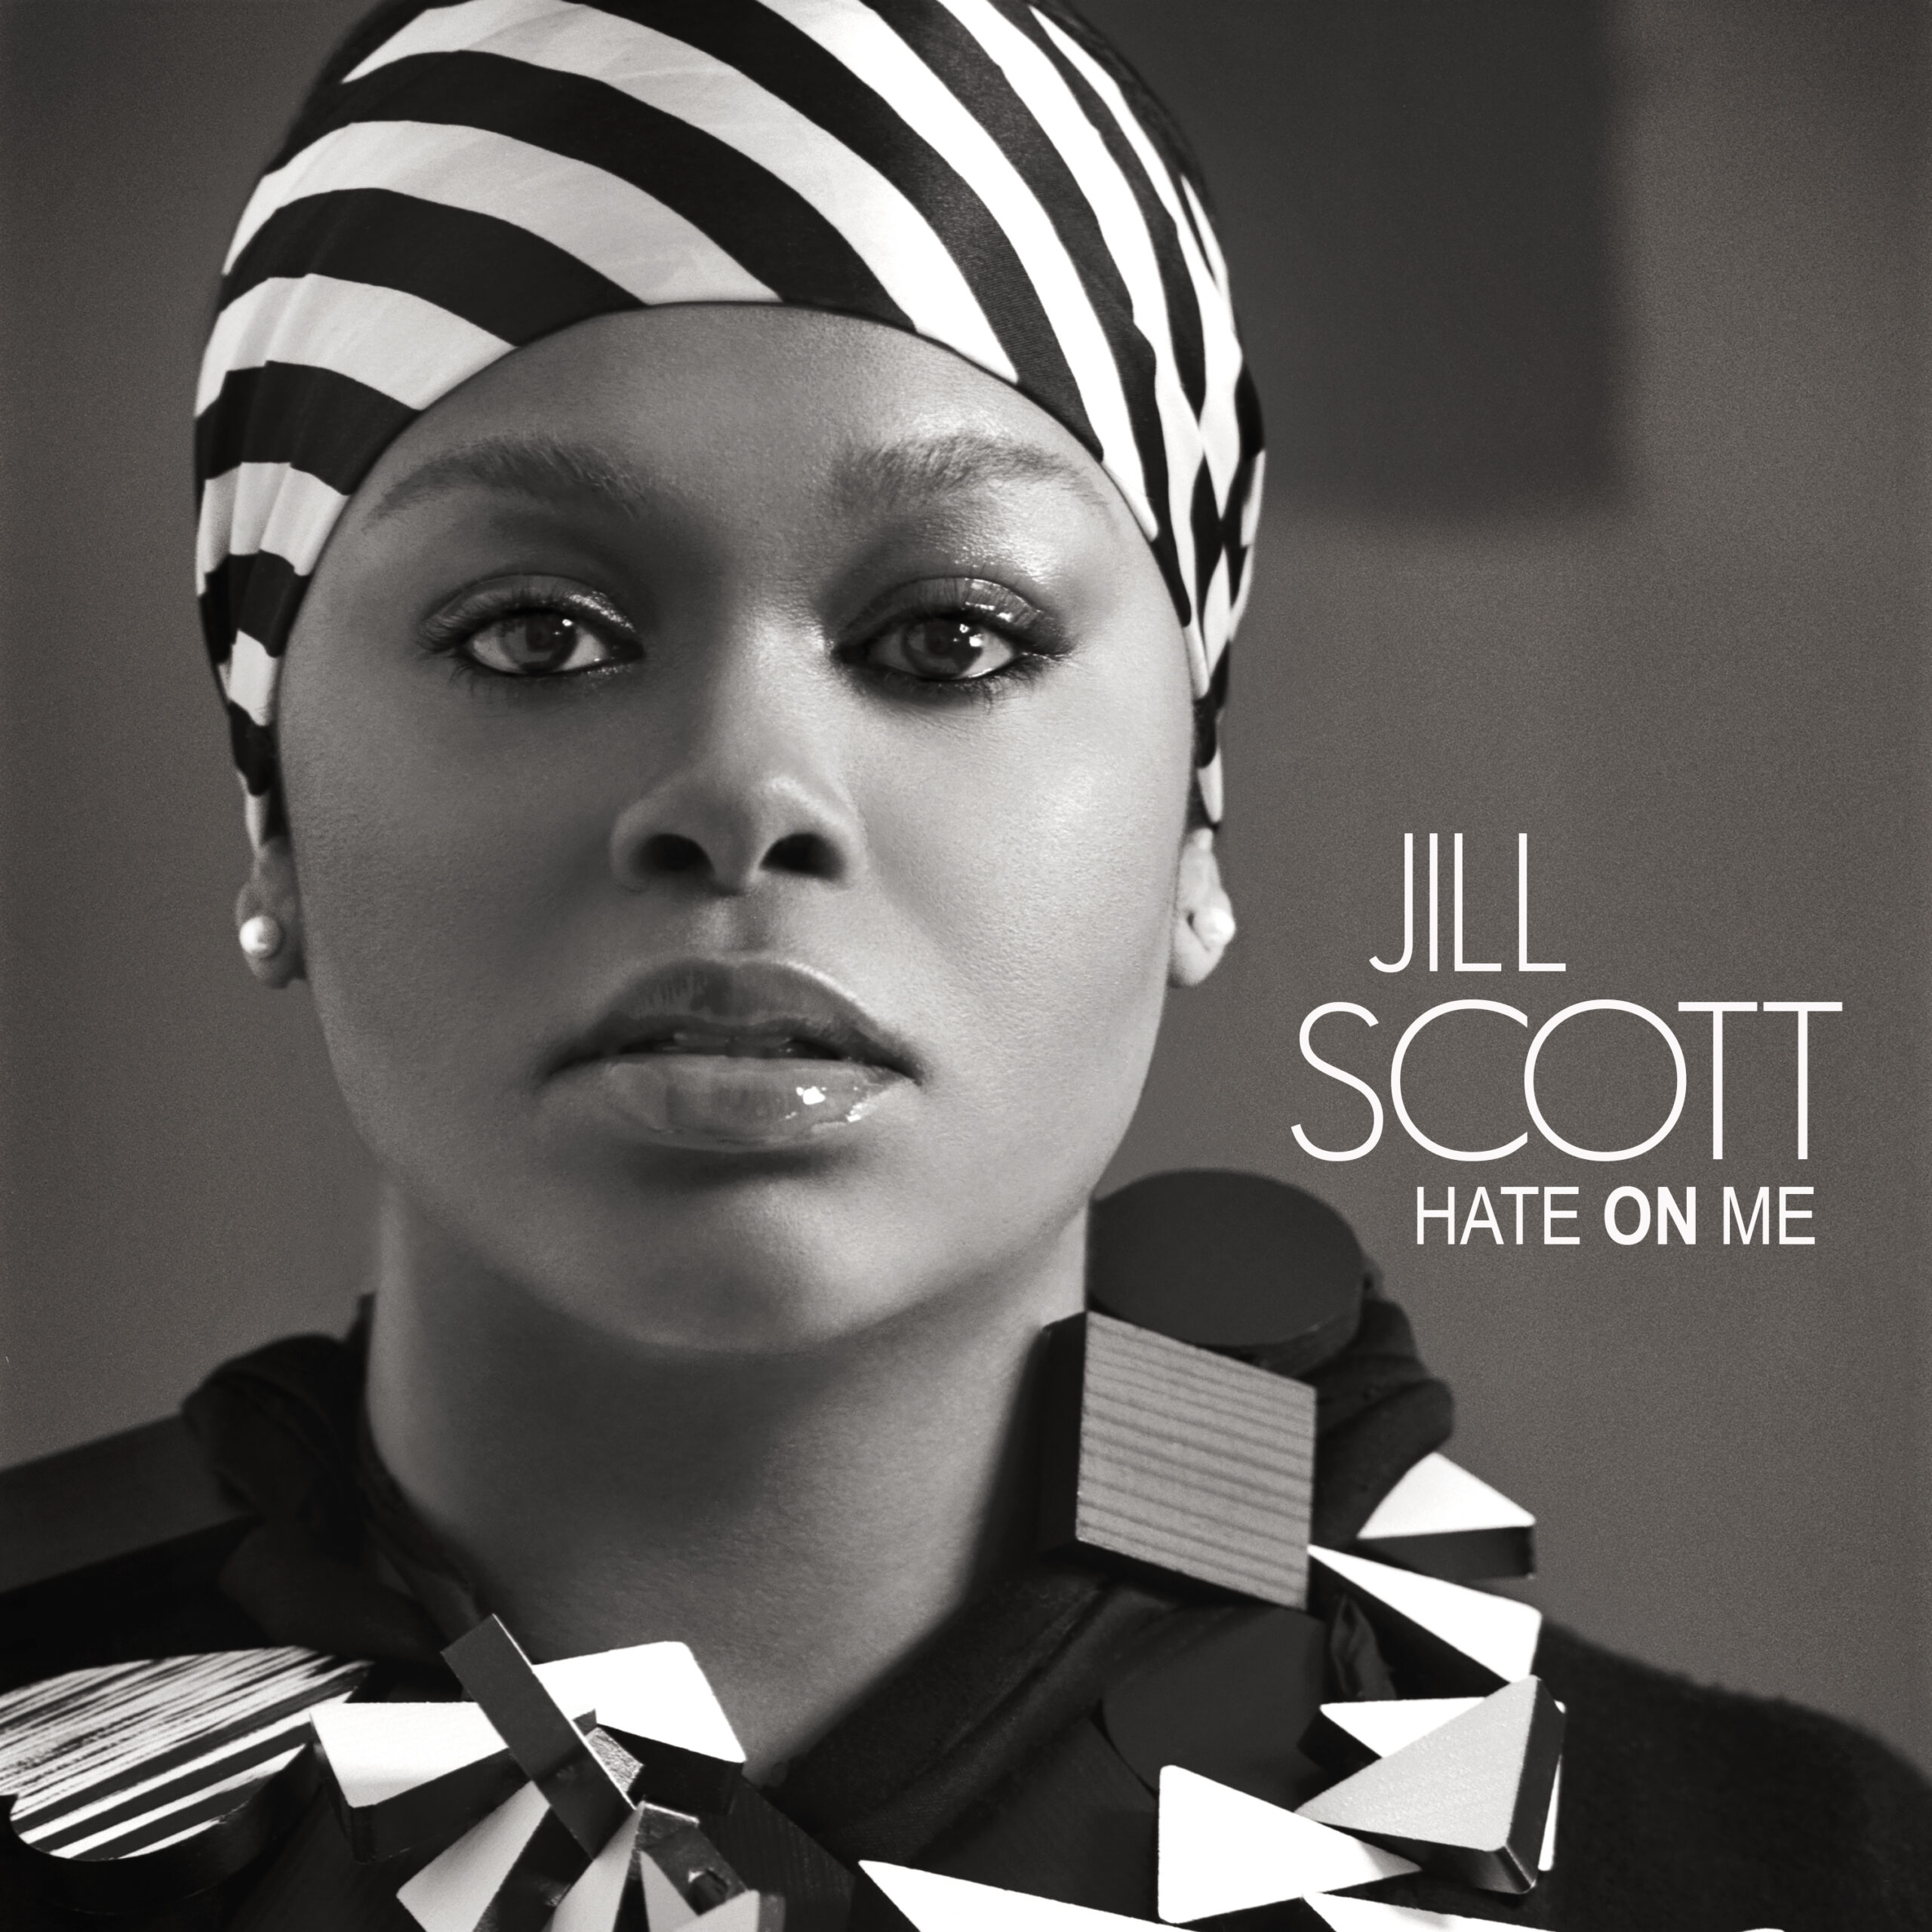 Jill Scott "Hate On Me" single cover art released by Hidden Beach Recordings